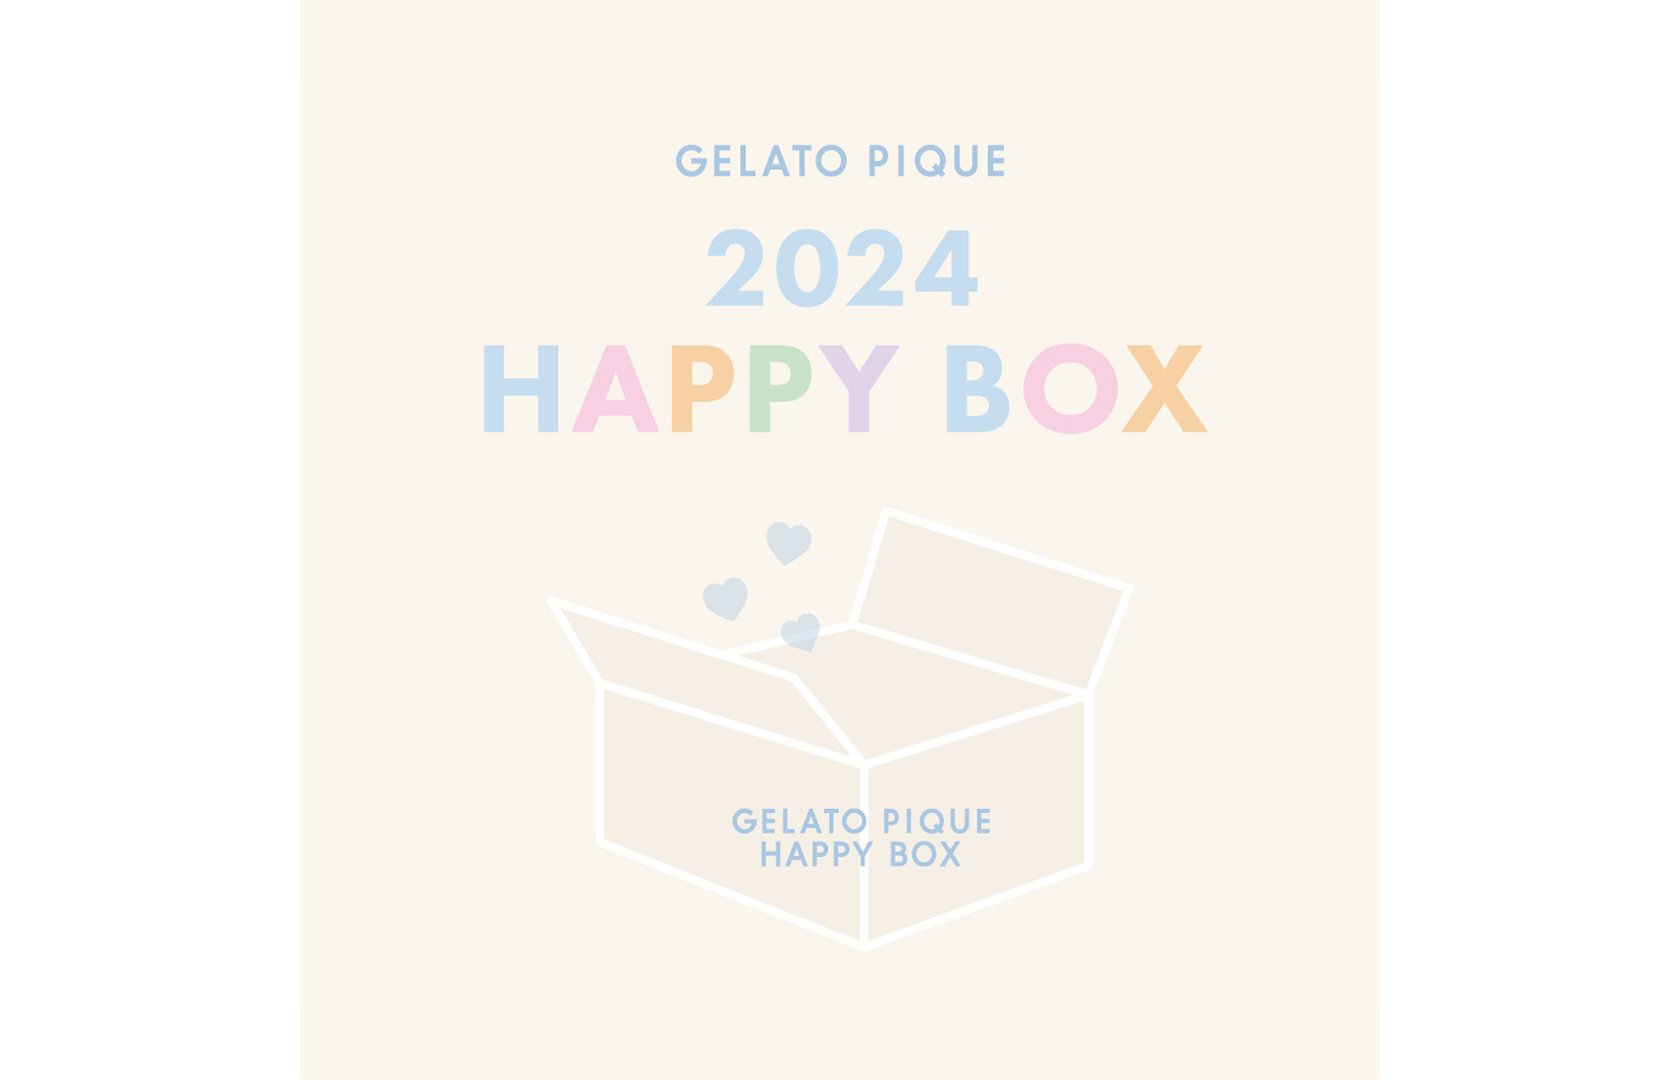 驚きの値段 ジェラートピケ福袋GELATO PIQUE HAPPY BOX 2024 - ルーム